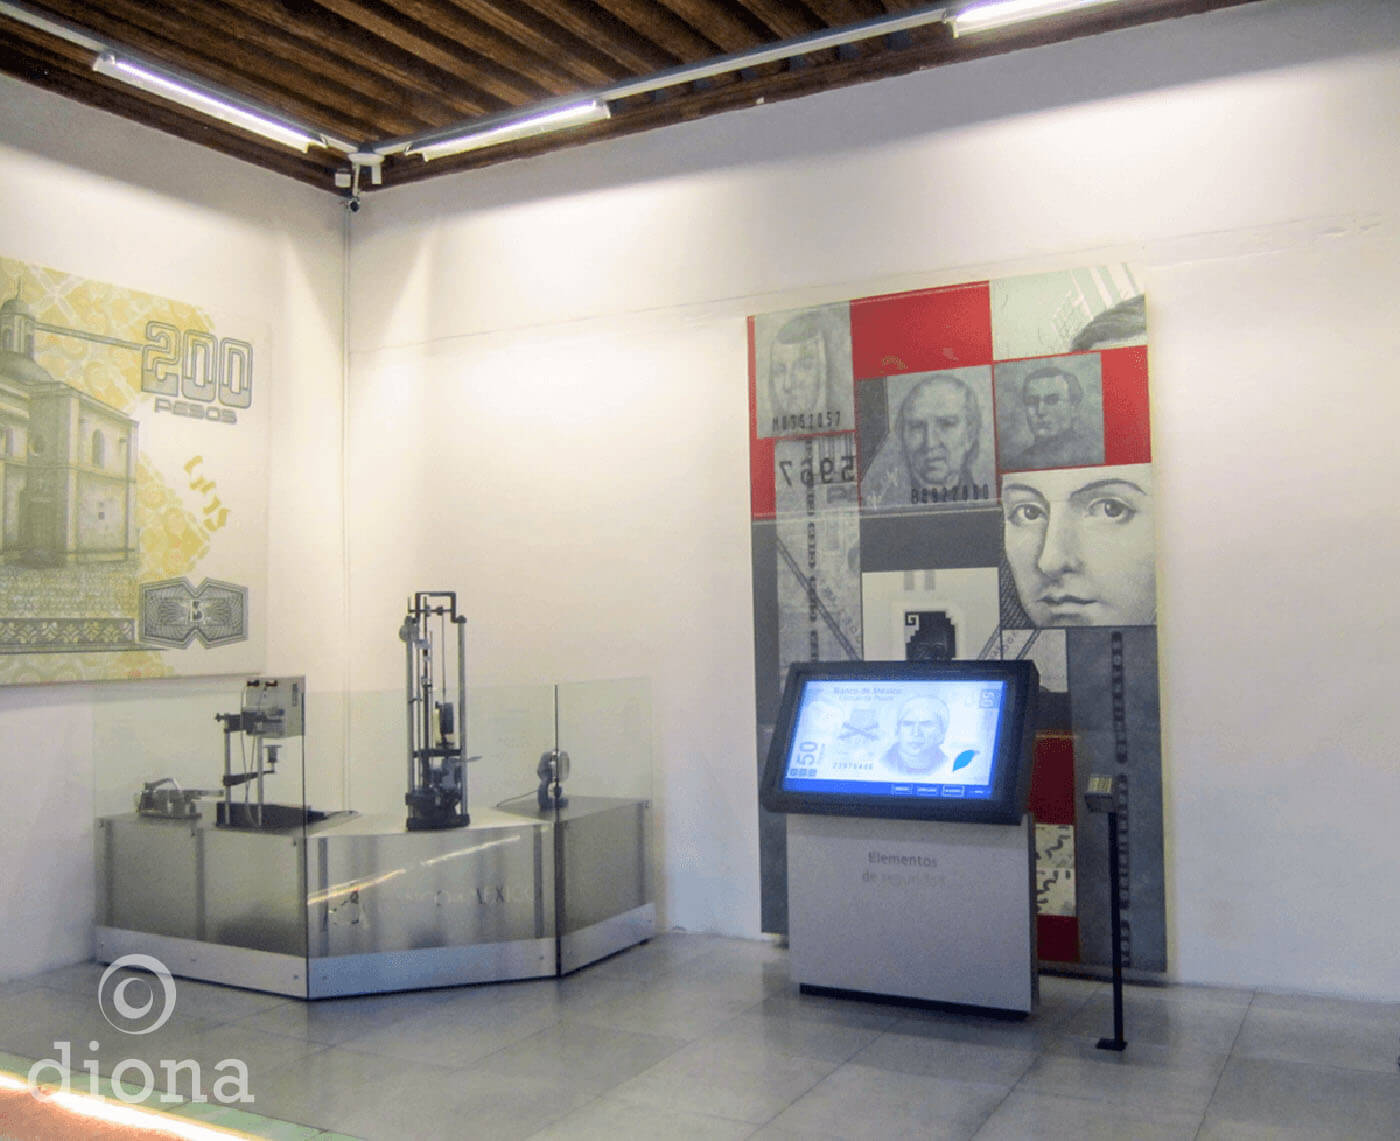 diseño industrial, mobiliario - MIDE, Museo Interactivo de Economía, diseño, fabricación diona